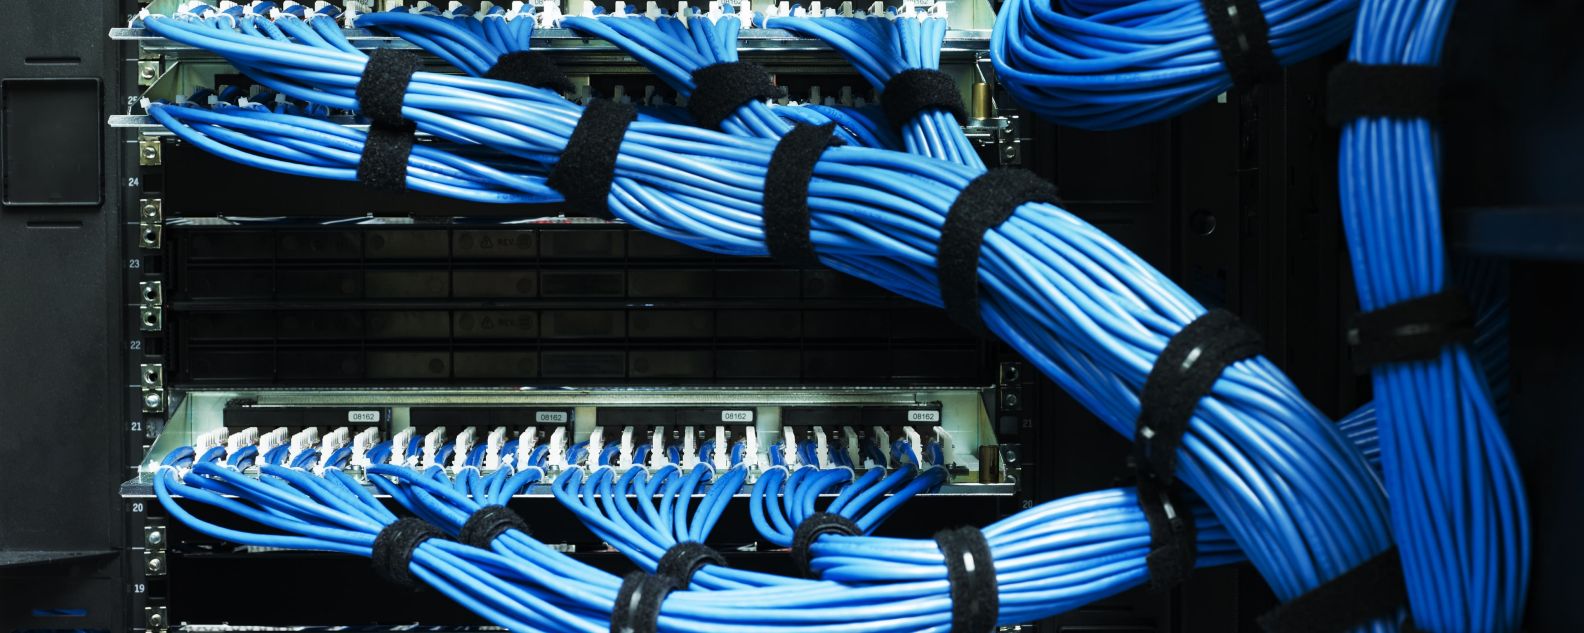 Cables dentro de un servidor